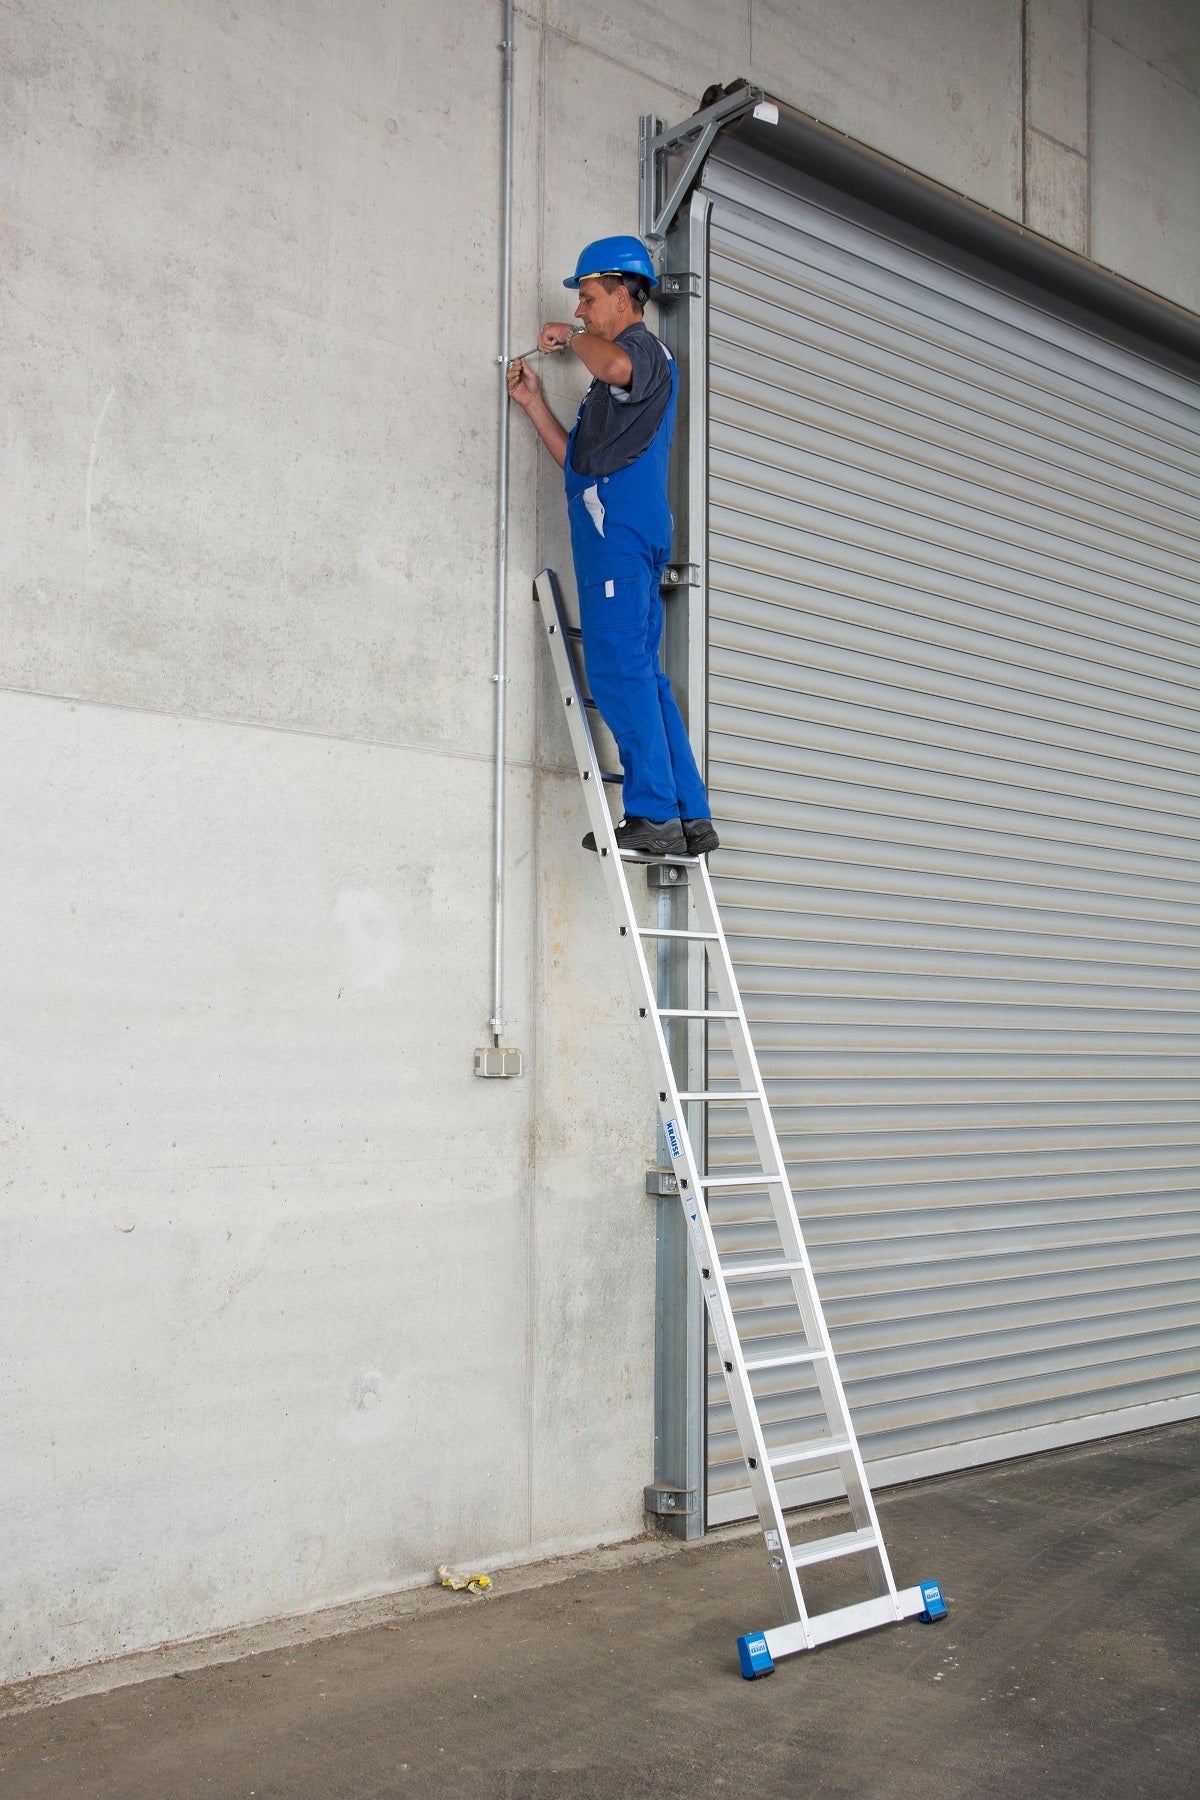 Leiter ZK-K000 Stufen-Anlege-Leiter einteilig 6-15 Stufen/Arbeitshöhe 2,7-4,8Meter